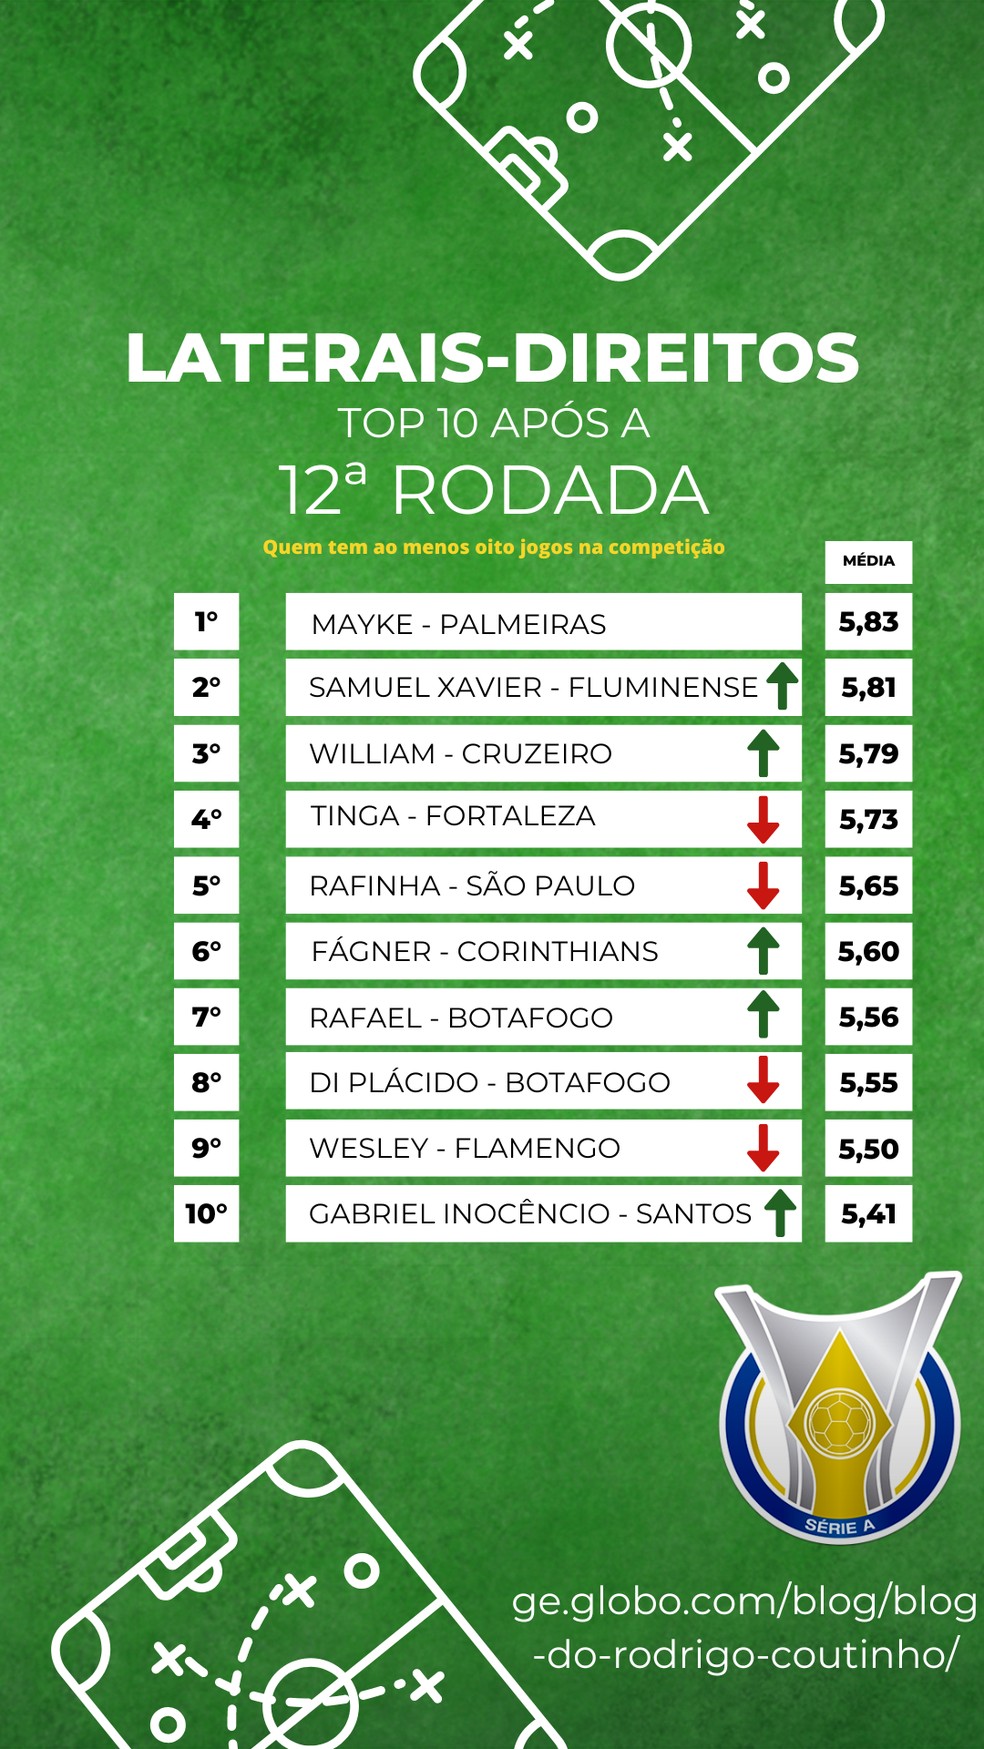 Brasileirão 2023: os melhores goleiros até a 10ª rodada